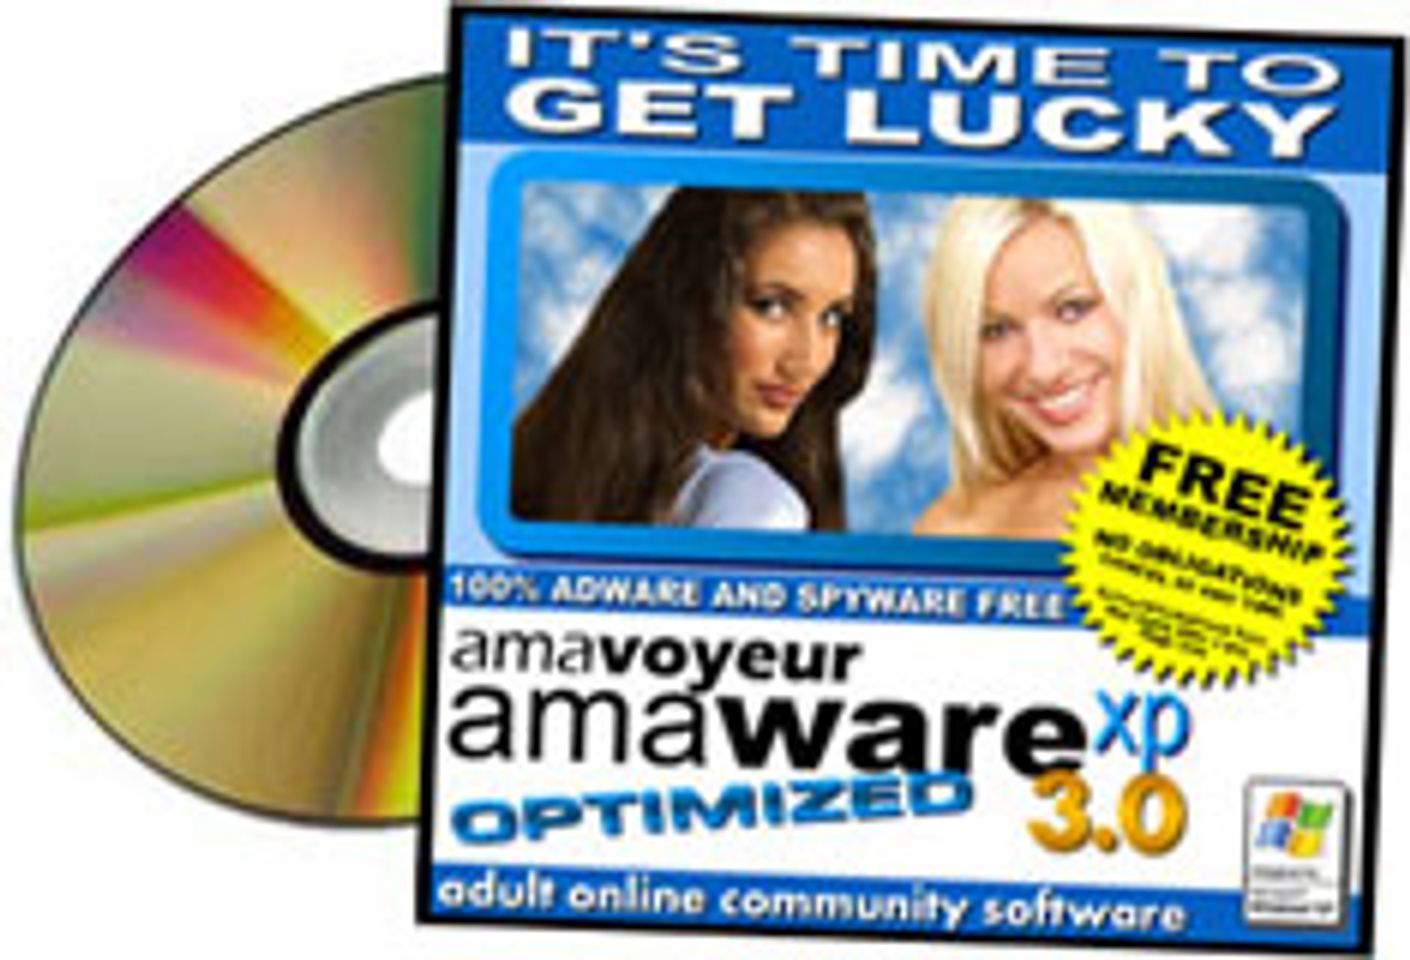 Friend Unveils New AmaWare XP